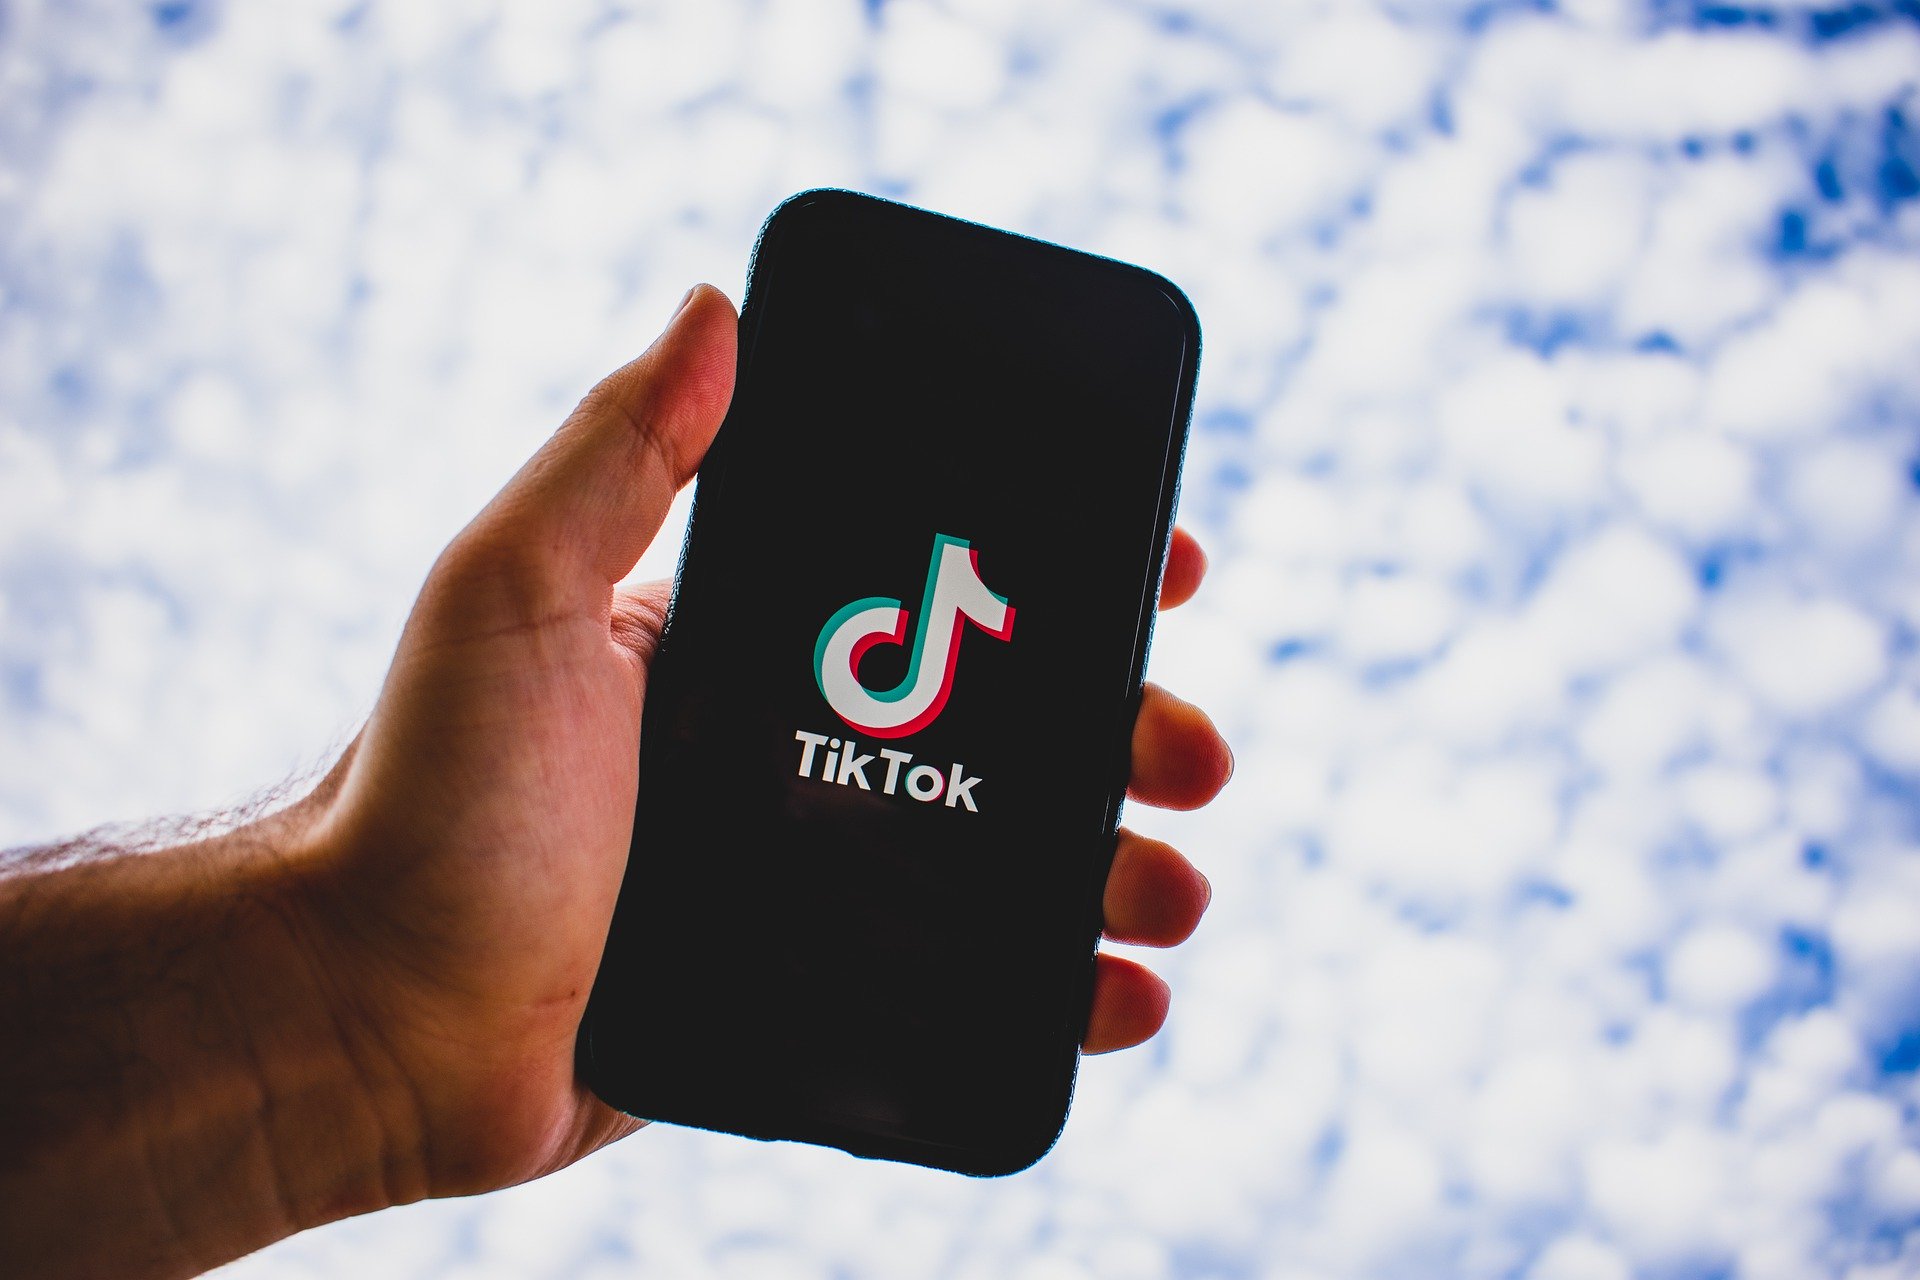 Las campañas de tráfico consiguen el mayor porcentaje de ‘clics’ en TikTok